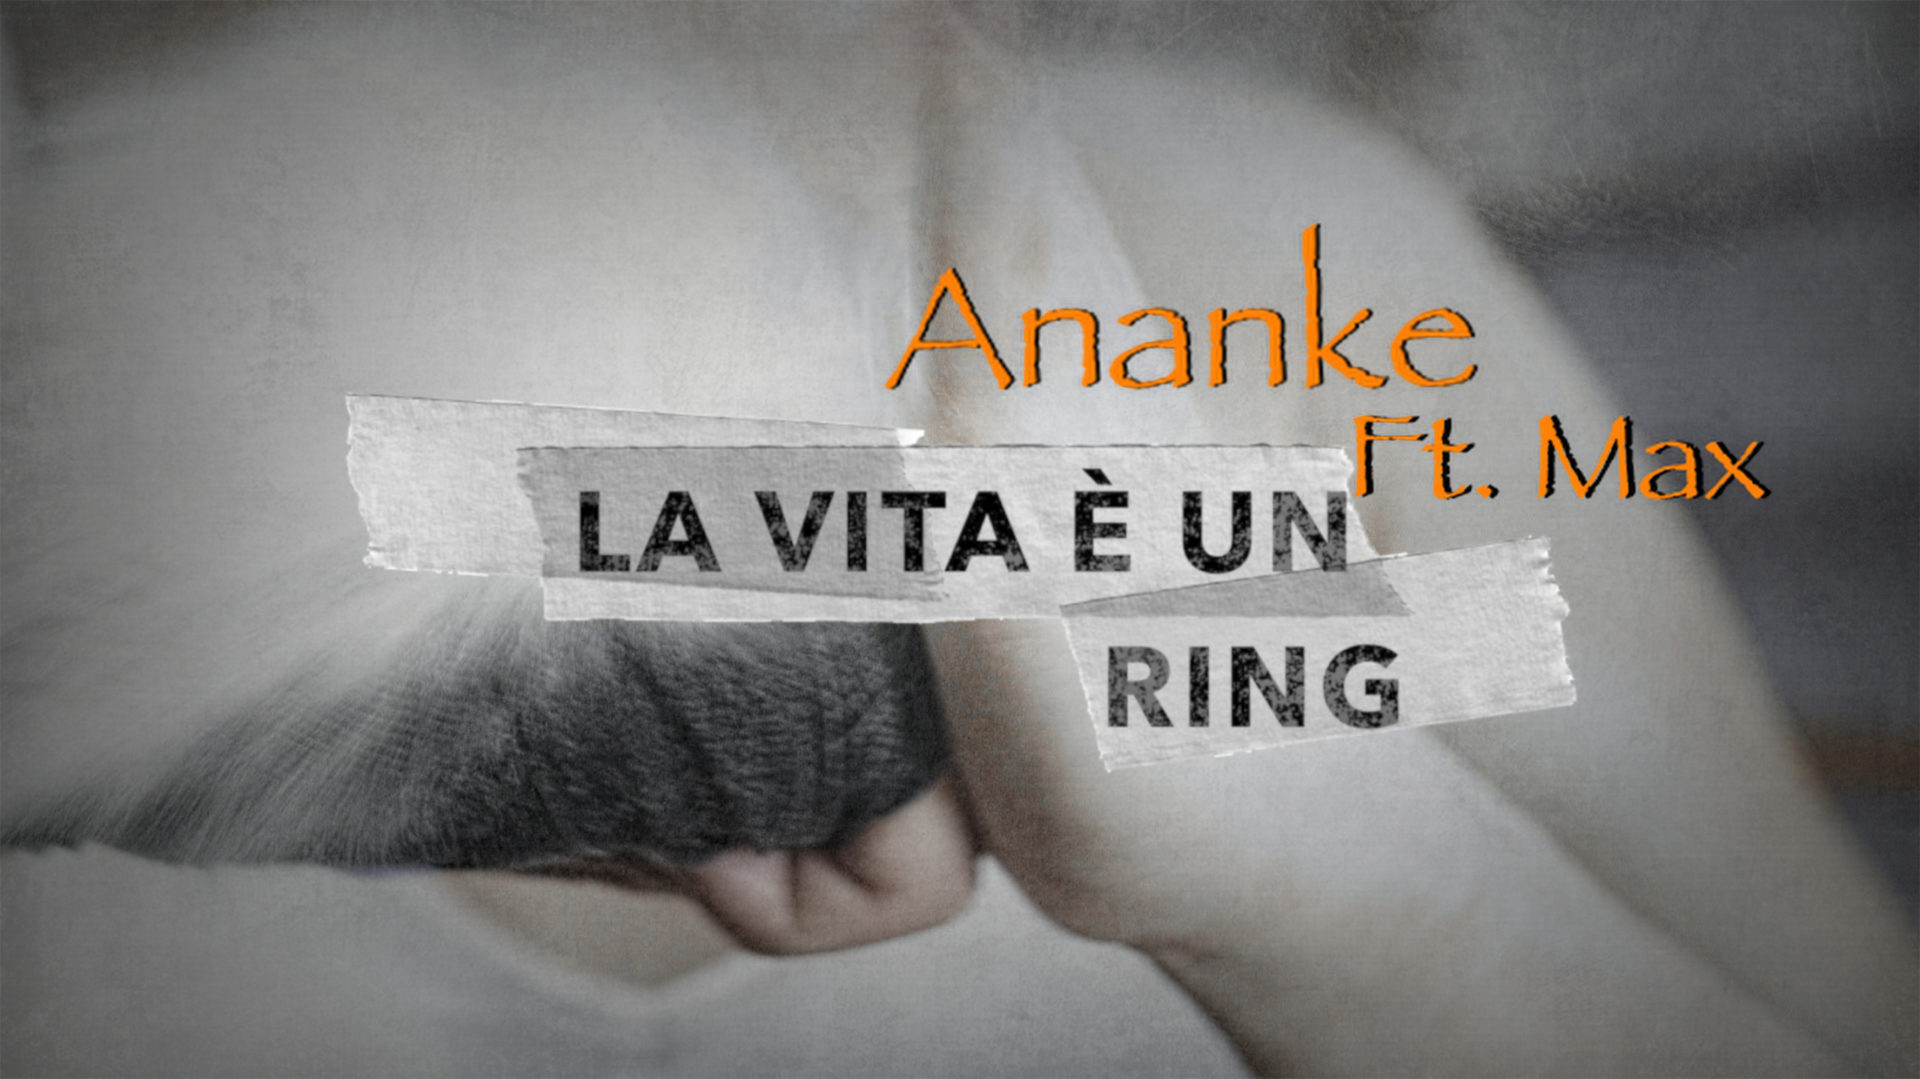 Alberto Ananke ft Max - La vita è un ring (official video)